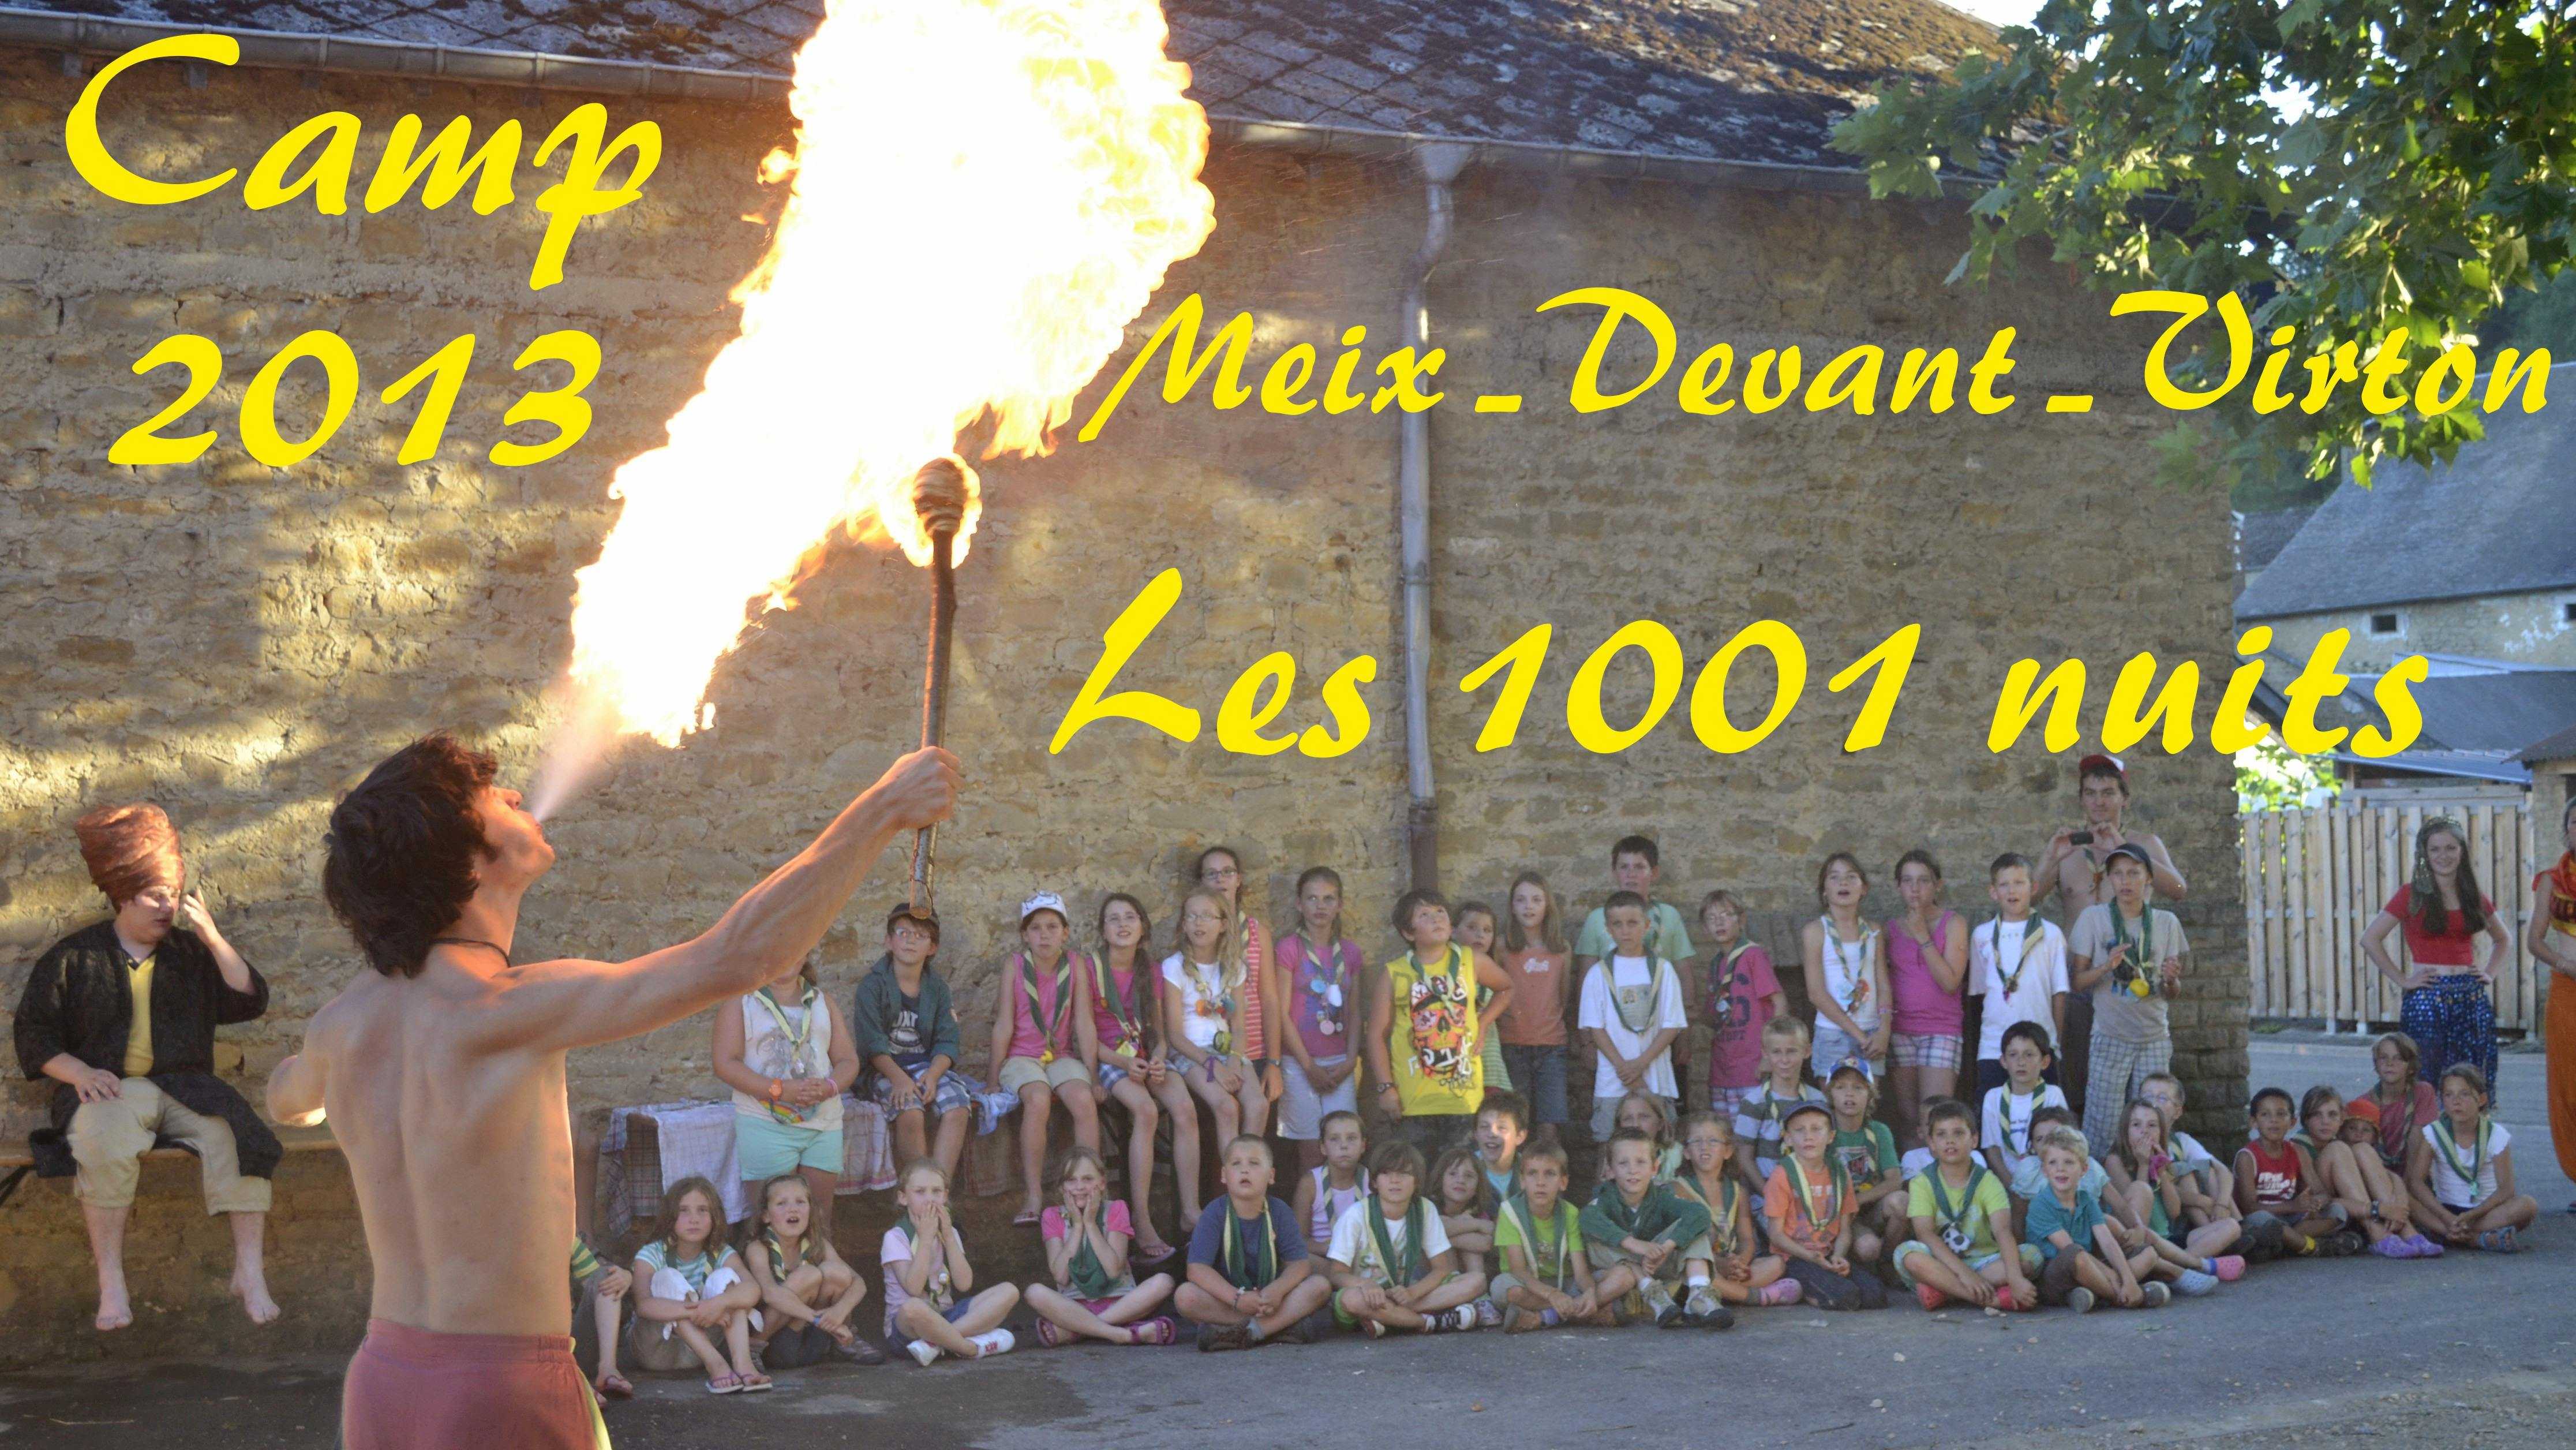 Camp 2013 Meix-Devant-Virton Les 1001 nuits